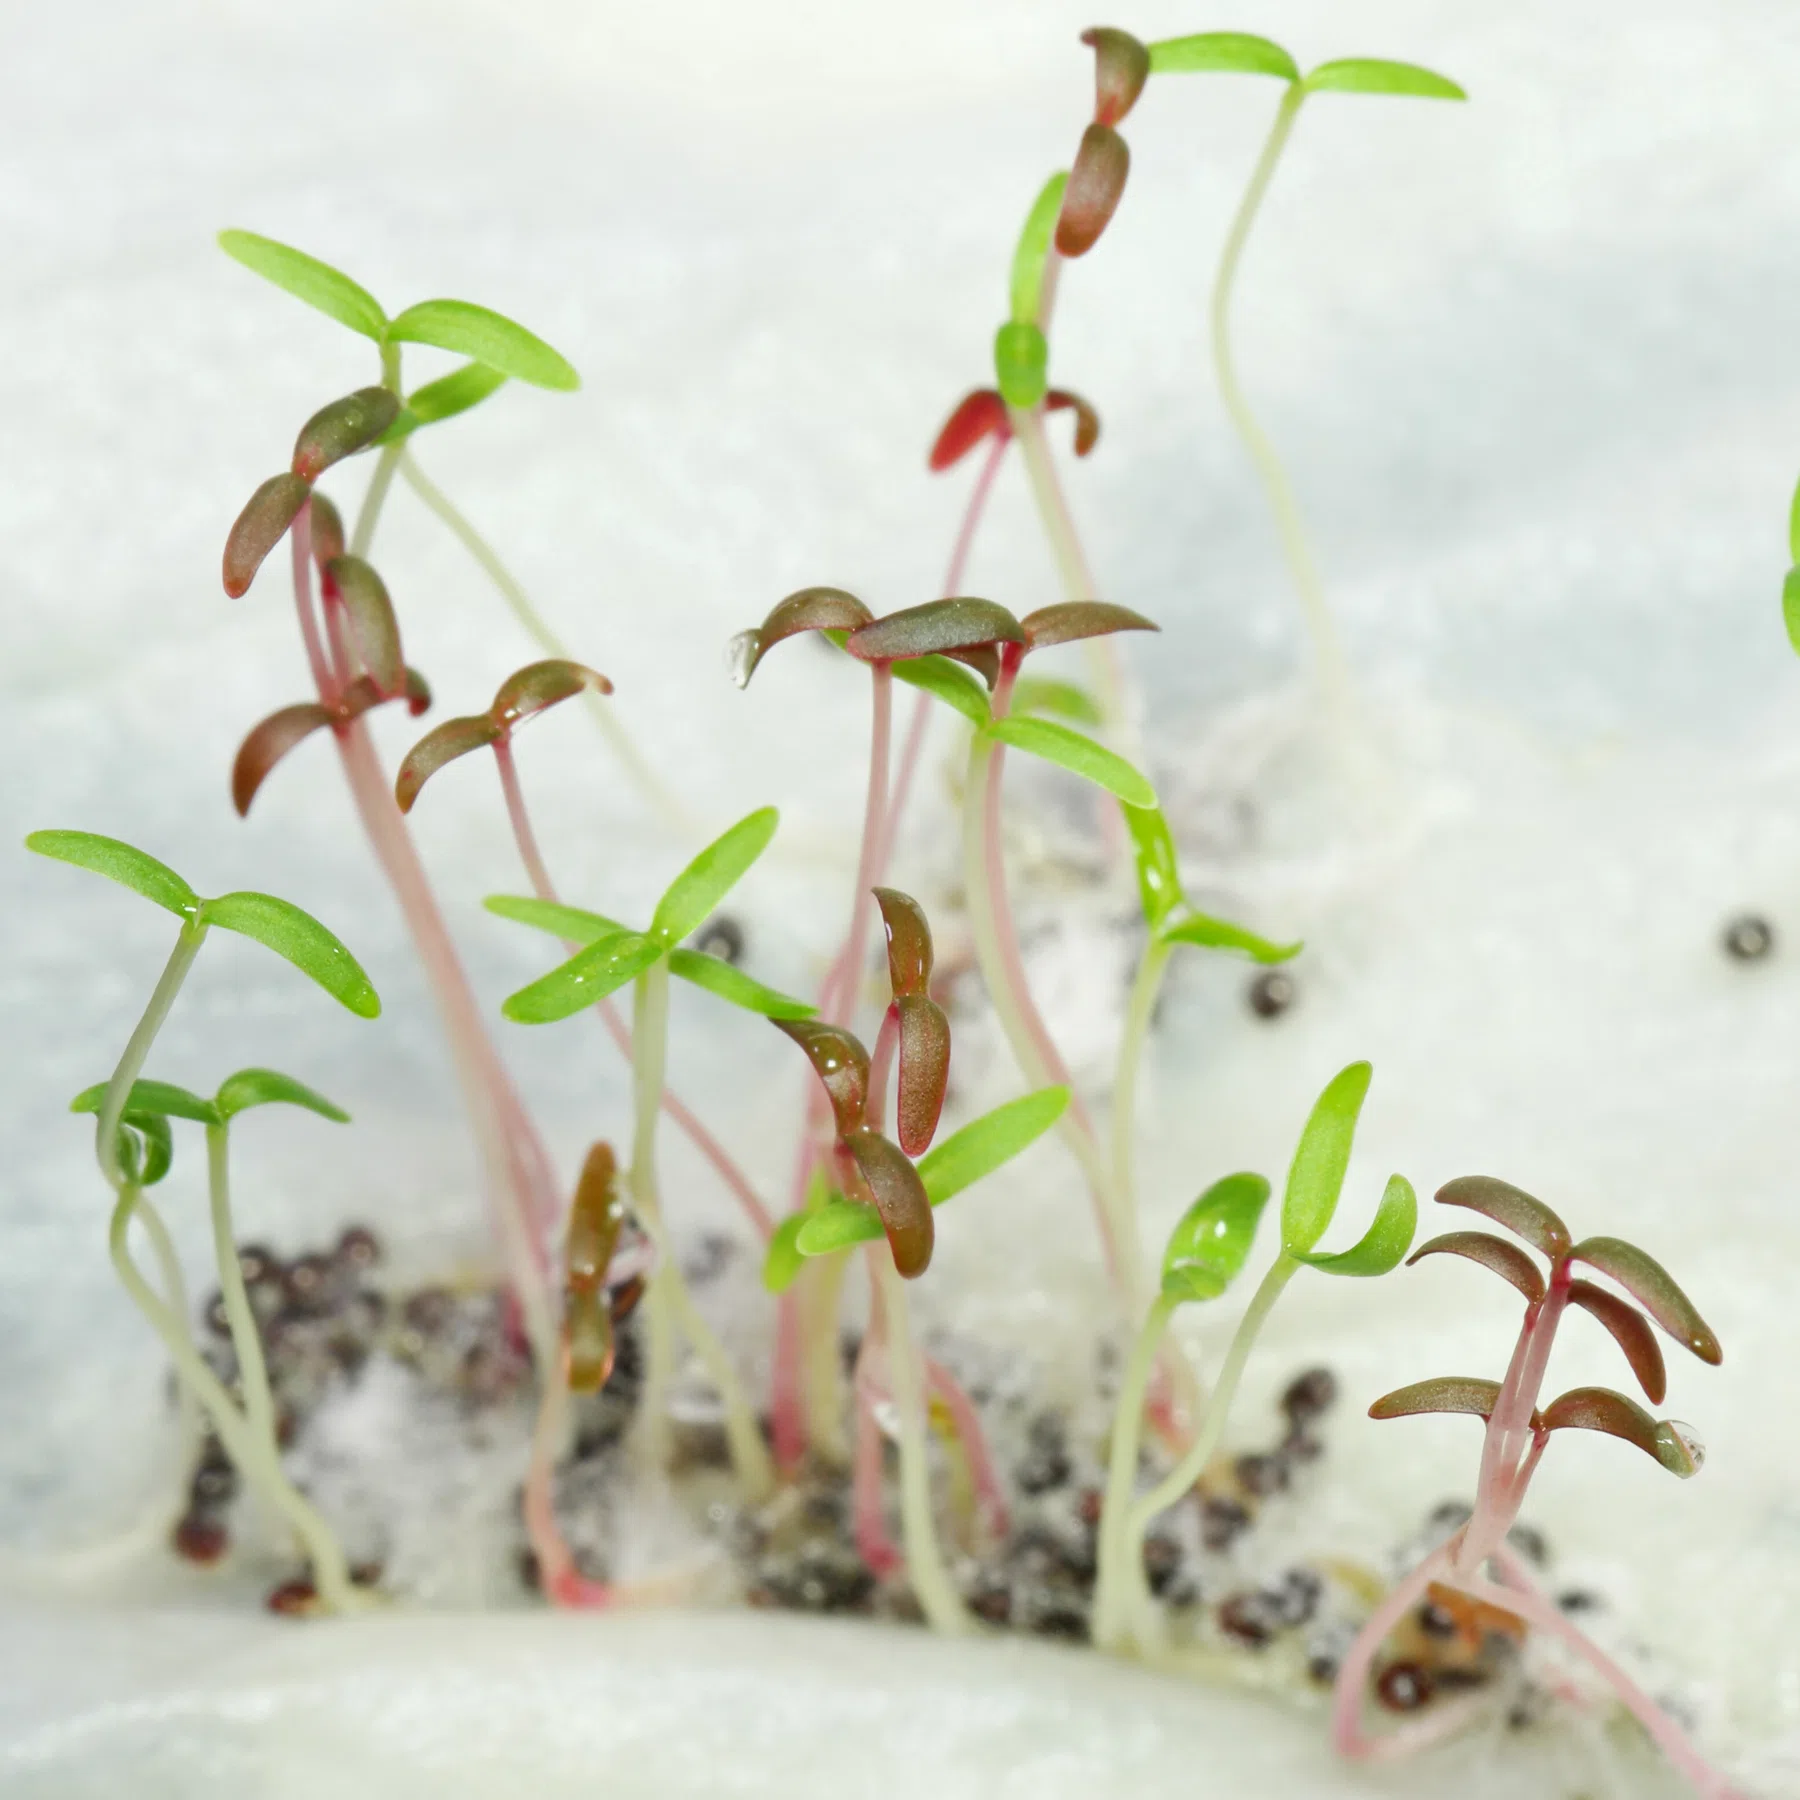 Amaranthus seedlings